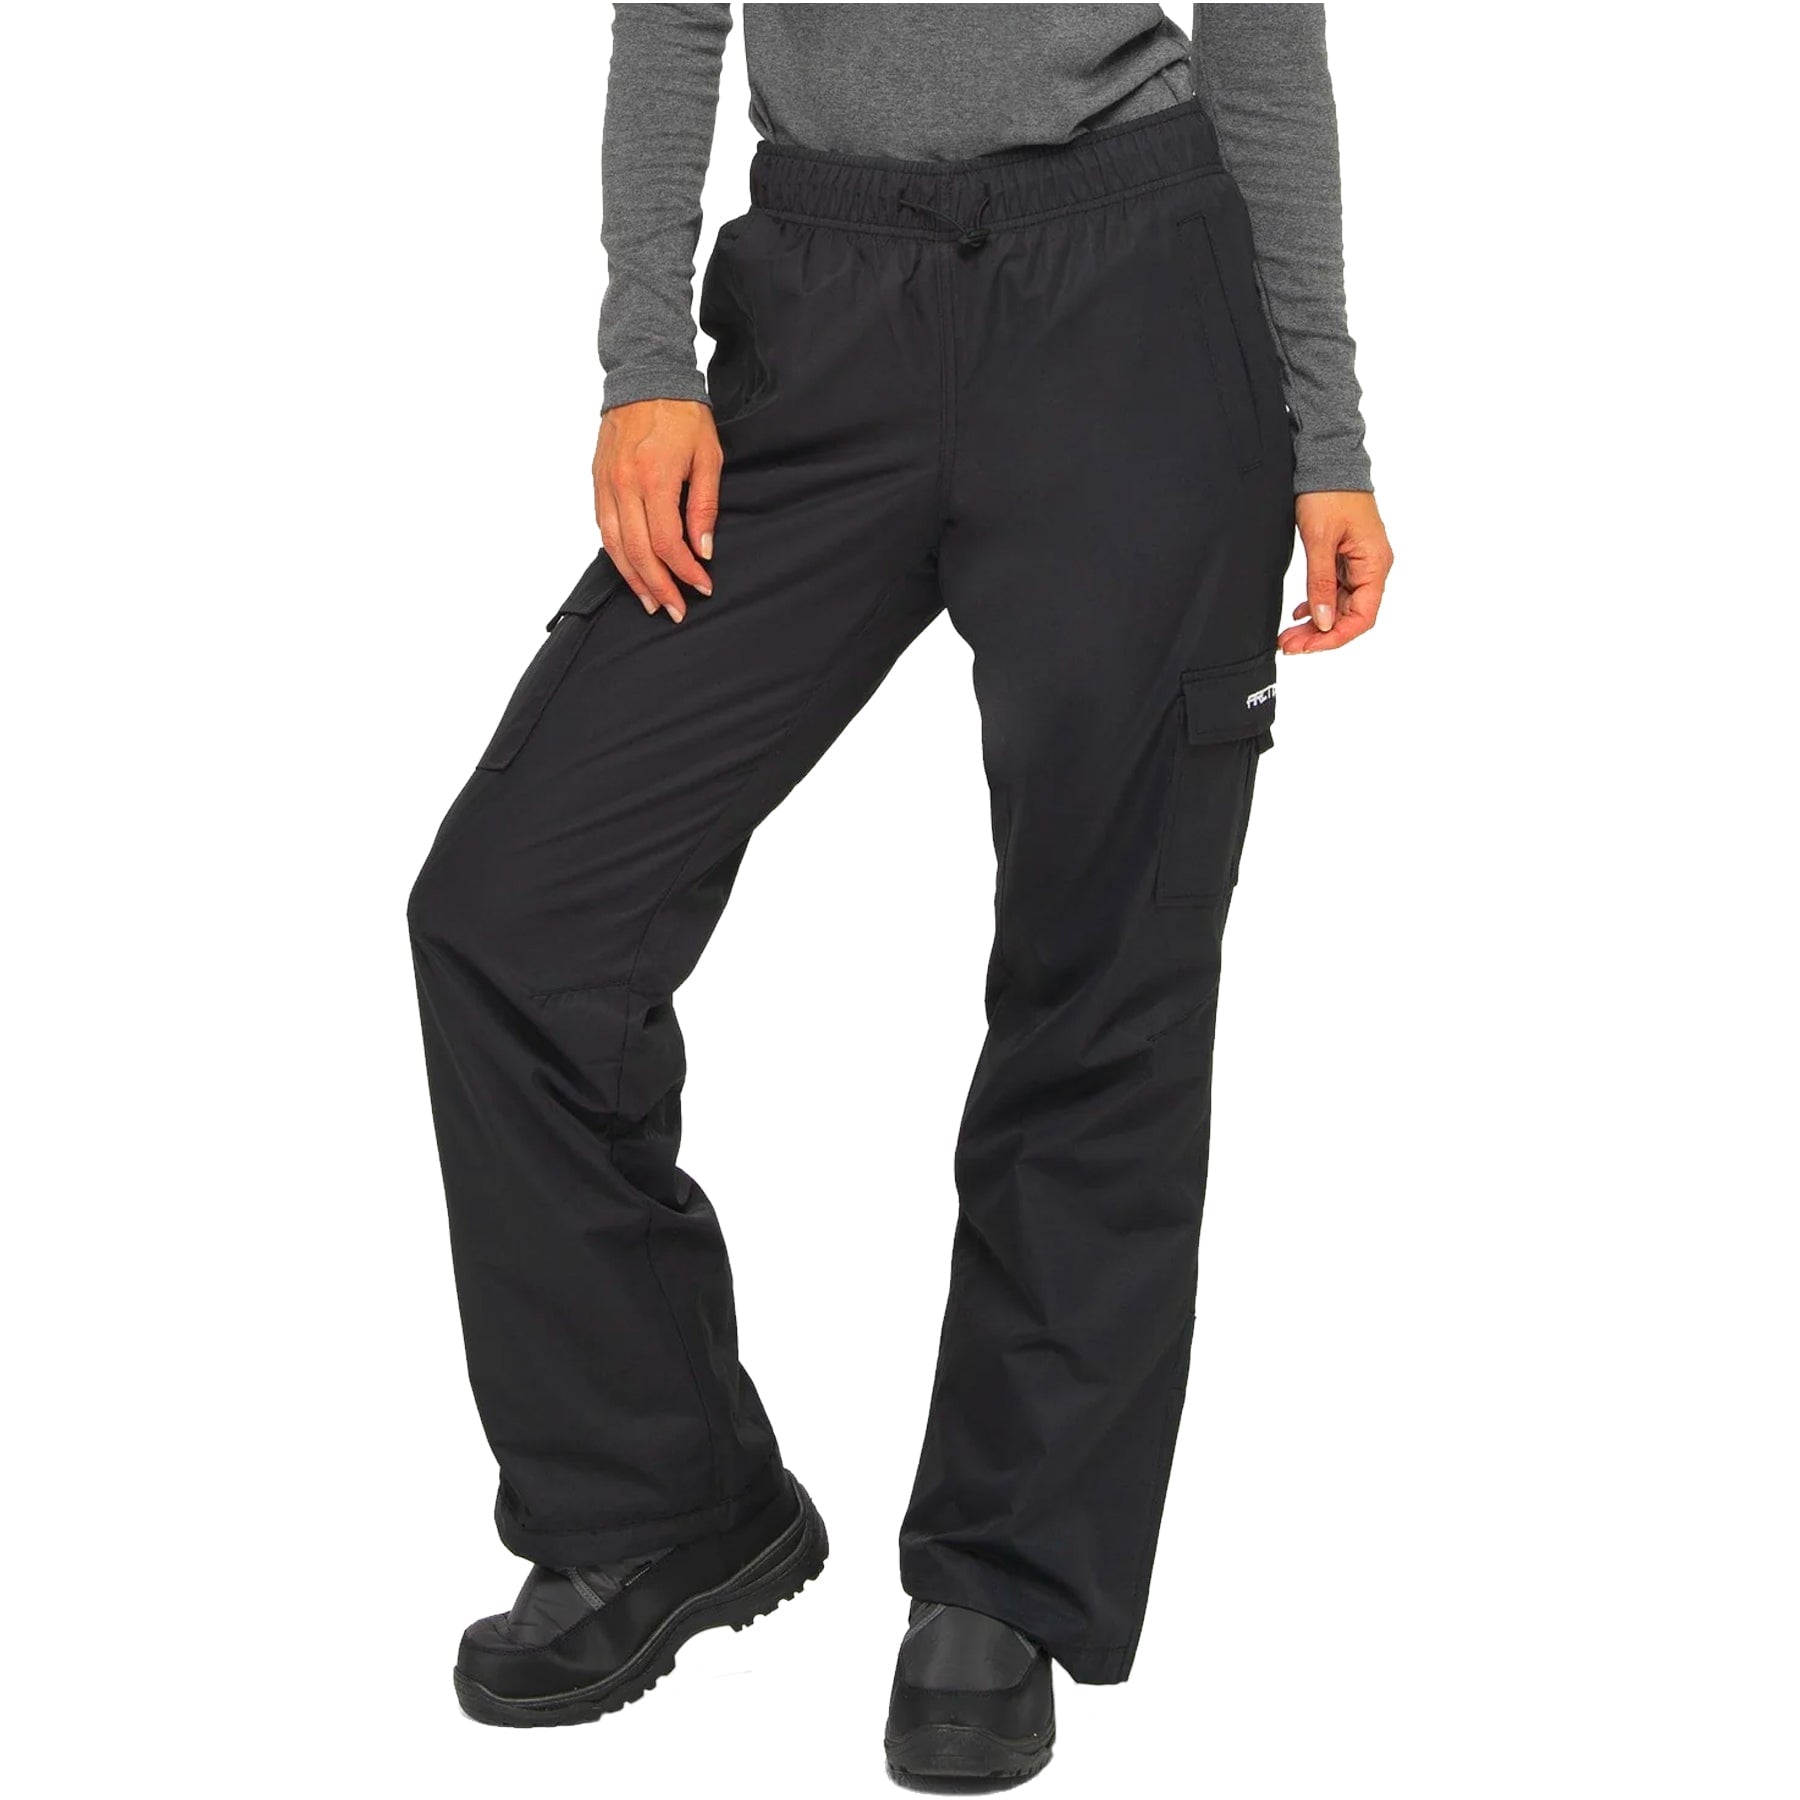 Arctix Men's Essential Snow Pants Black Medium/28 Inseam